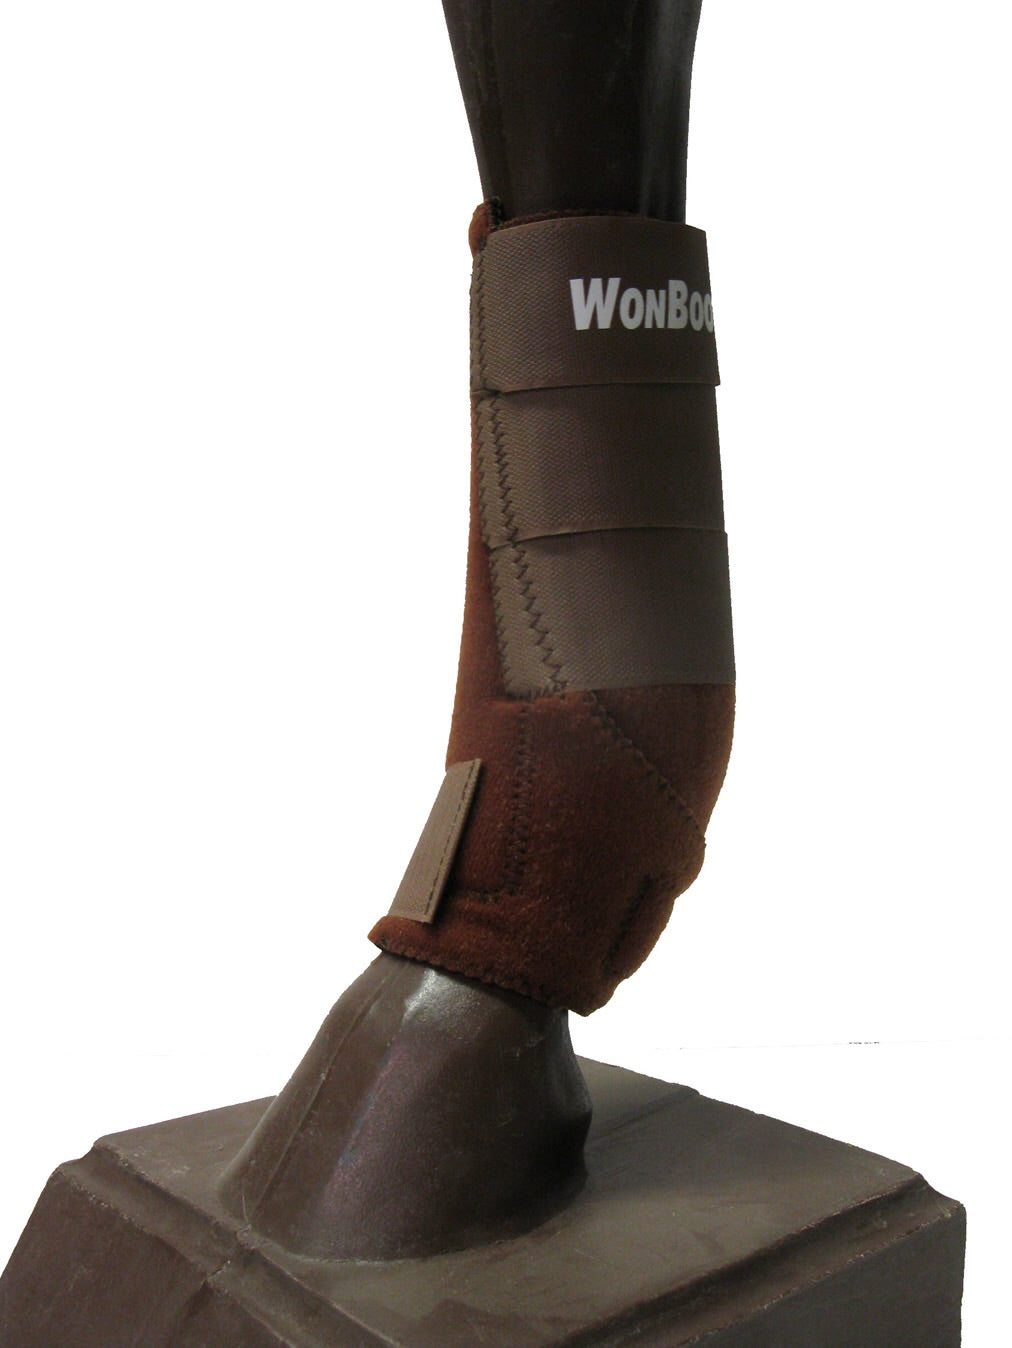 WONboot Sport Boot